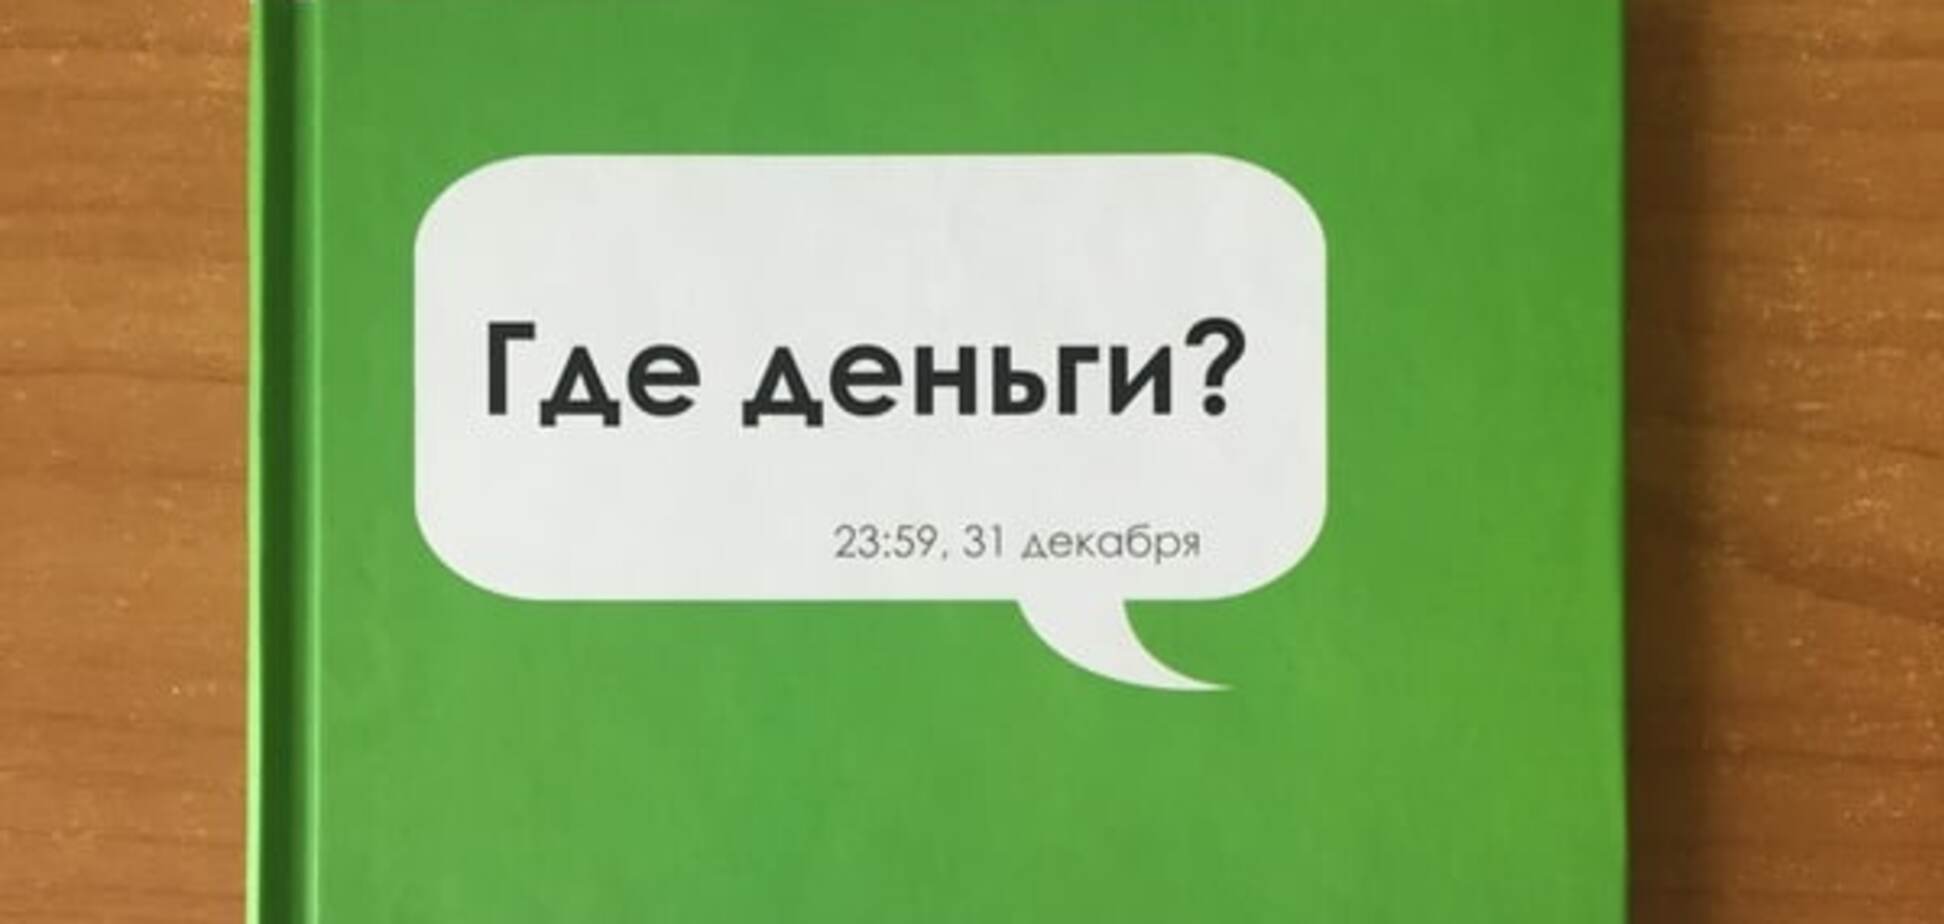 'Где деньги?' Украинская бизнес-литература пополнилась нетипичной новинкой